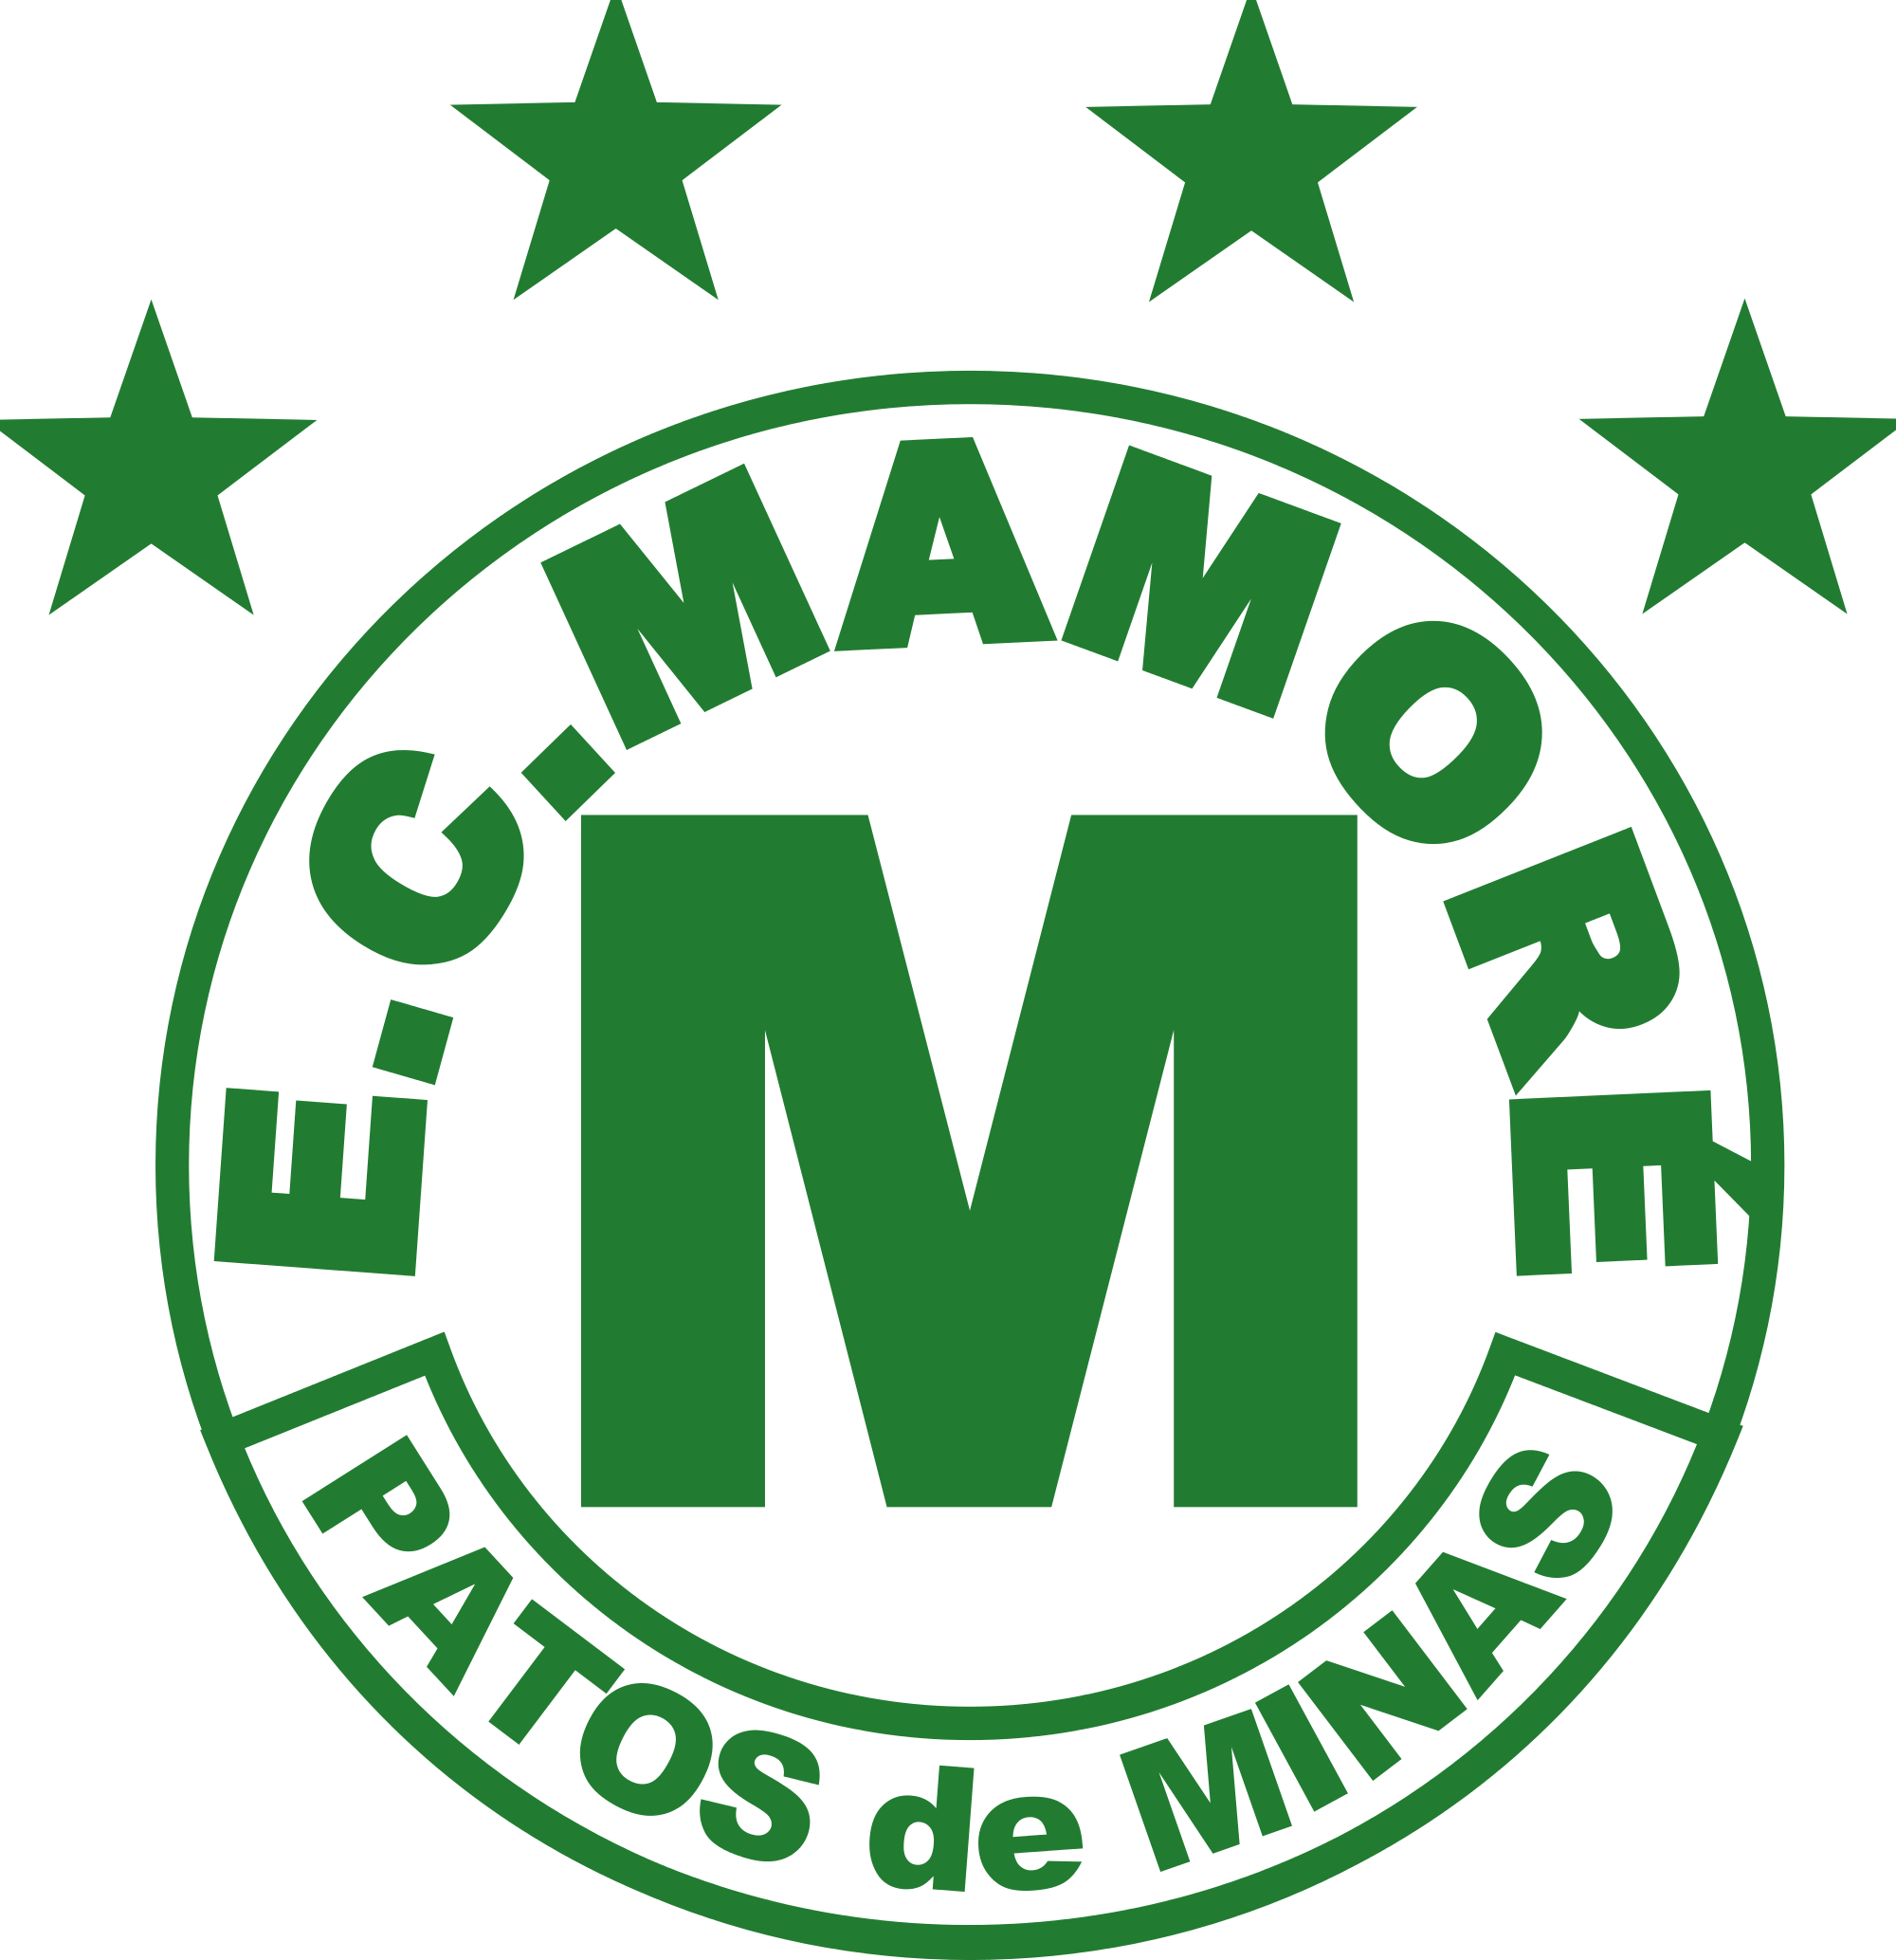 Mamore logo